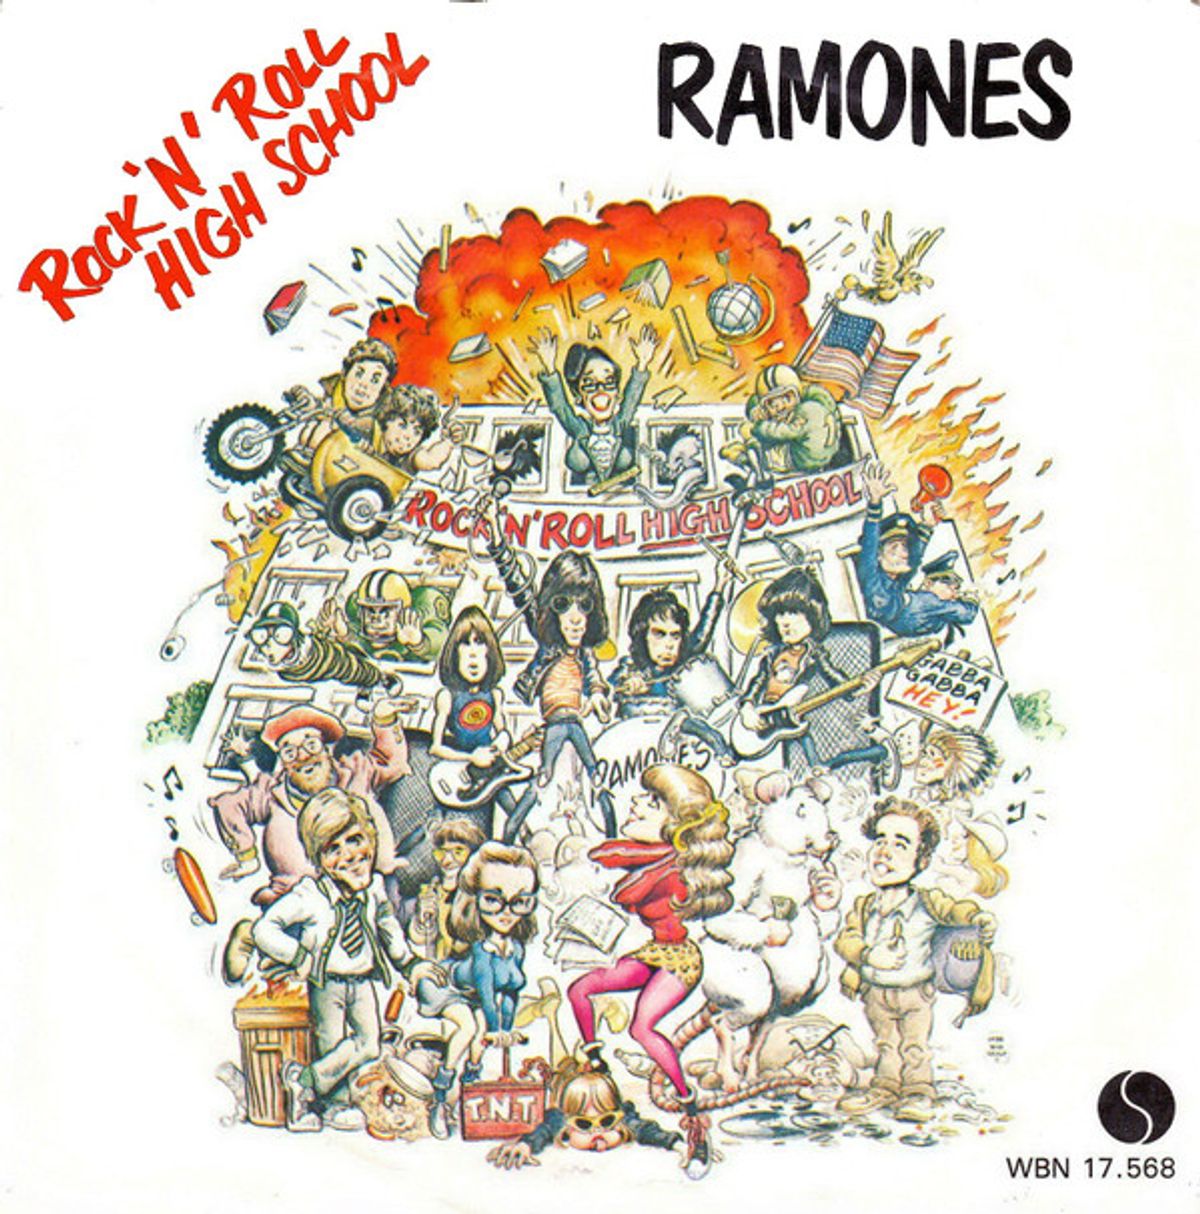 #SchoolStart - The Ramones - Rock 'N' Roll High School (1981)